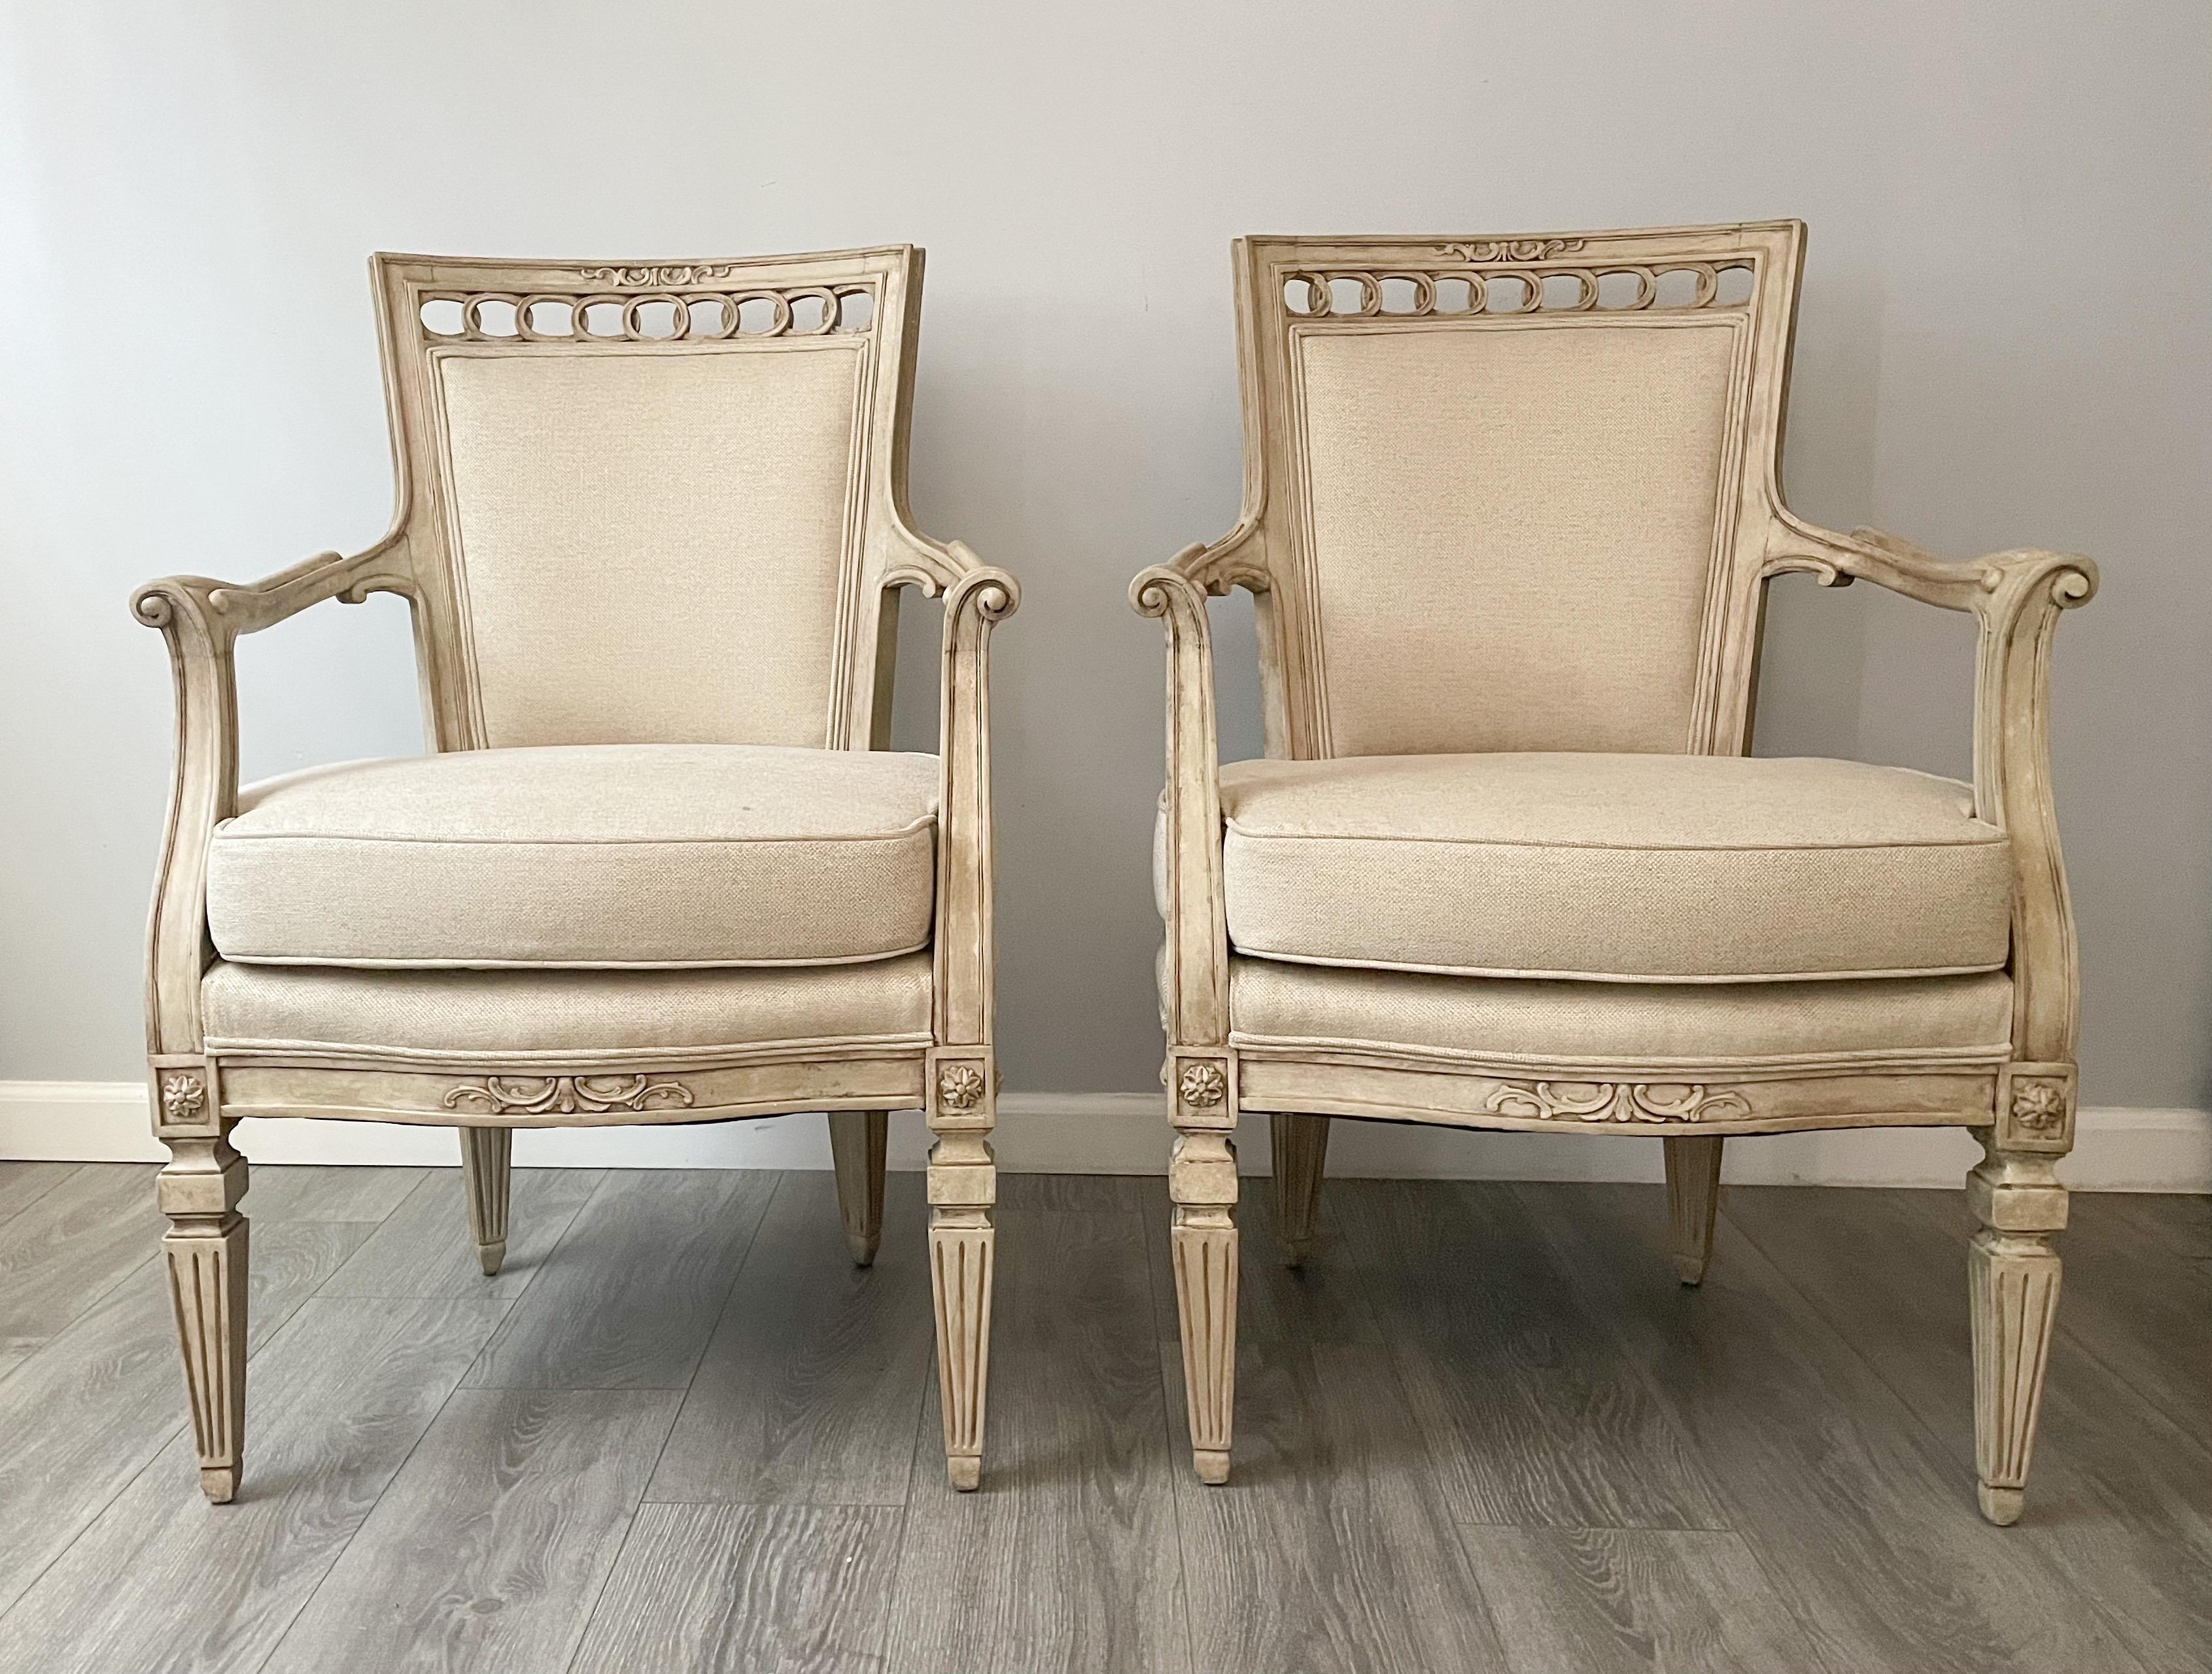 Wunderschönes, antikes Paar französischer Sessel im neoklassizistischen Stil.

Jeder Stuhl besteht aus einem elegant geschnitzten Holzrahmen mit einer Lackierung im Used-Look und einer neuen Leinenpolsterung. Lose Sitzkissen und selbstgenähte